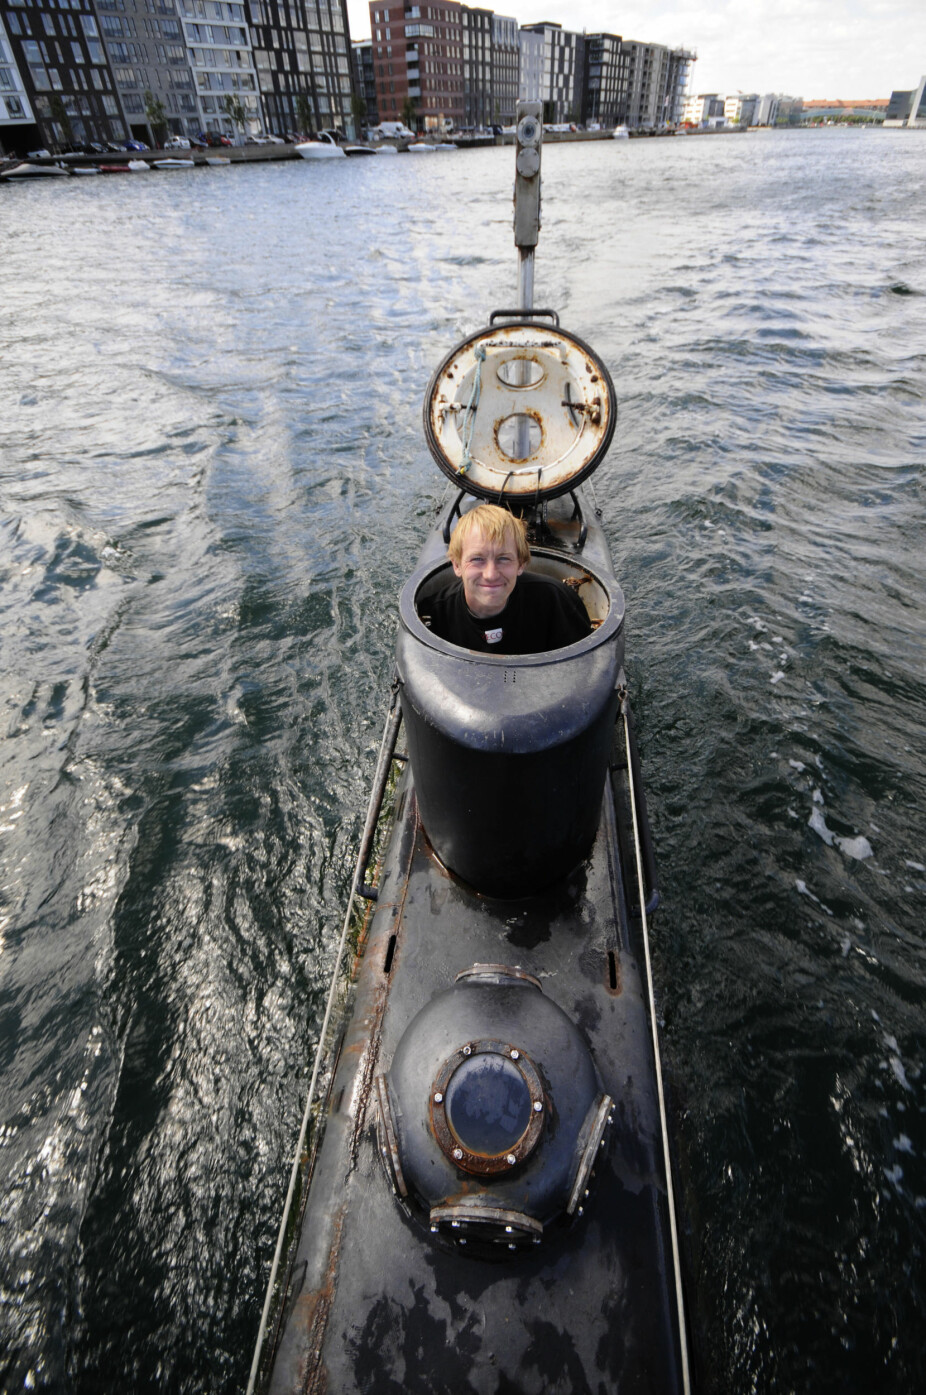 <b>BYGGET TRE UBÅTER:</b> Peter Madsen har konstruert og bygget tre ubåter i København. Det var i den største, «Nautilus», Kim Wall døde og ble partert. Her er Madsen avbildet i 2008 i den langt mindre ubåten «Kraka».